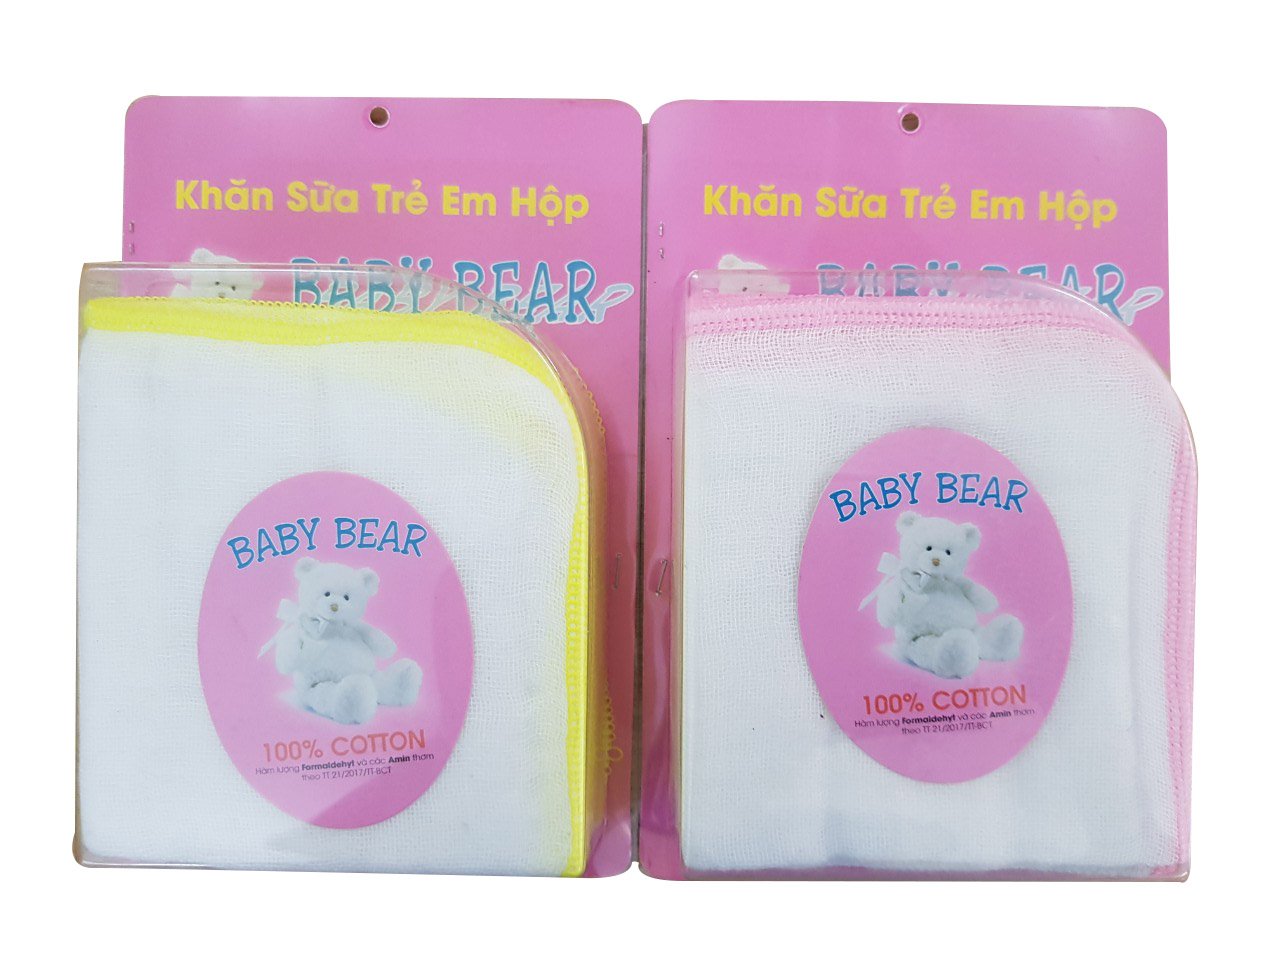 Khăn sữa Baby Bear hộp 3 Lớp 10 cái 25 cm x 25 cm